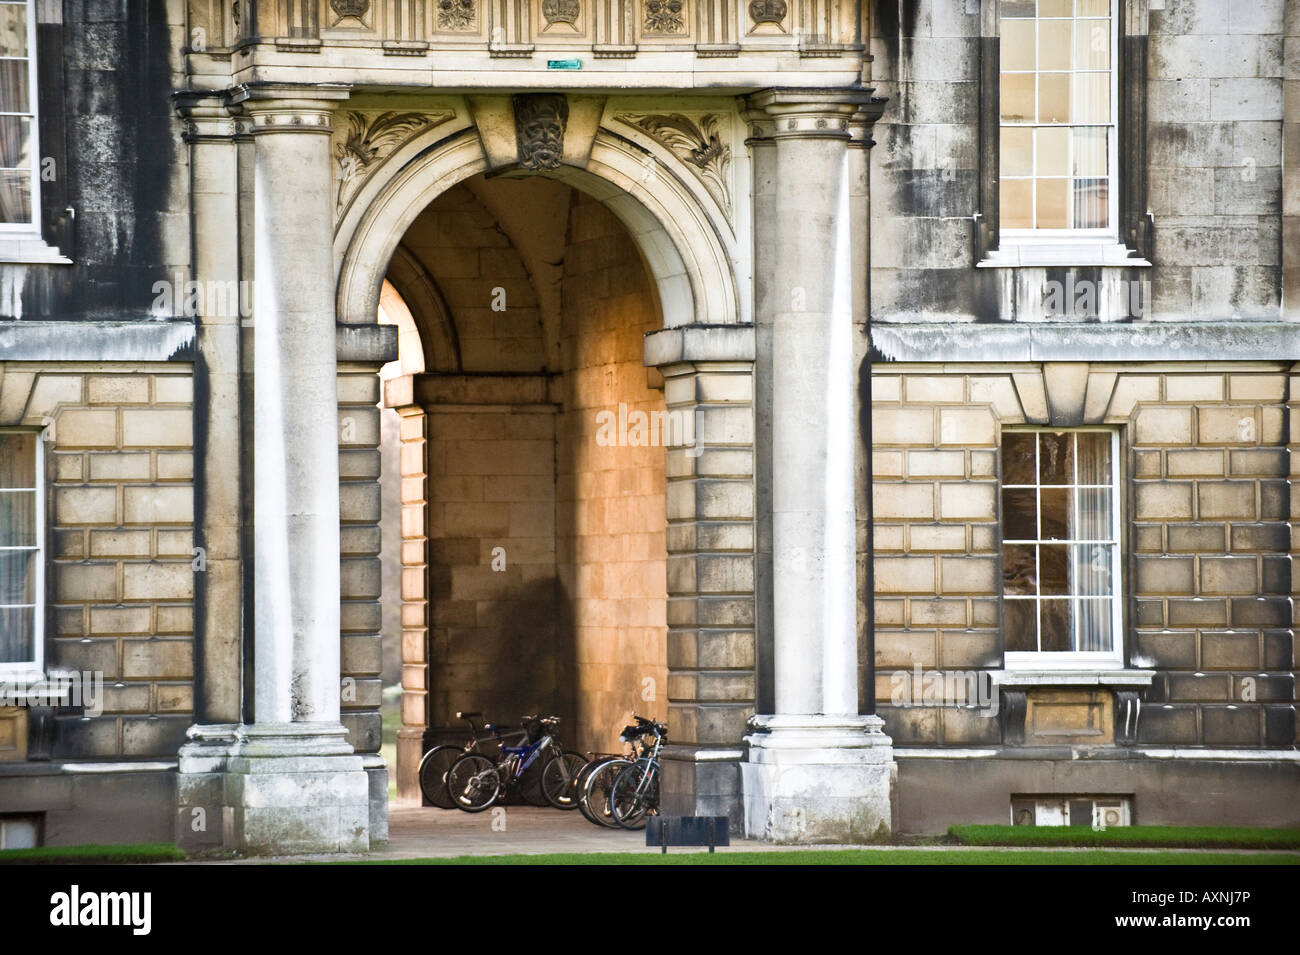 Cambridge College Architektur Gebäude Universität Säulen Tür Fenster Stein historischen denkmalgeschützten Altbauten Stockfoto